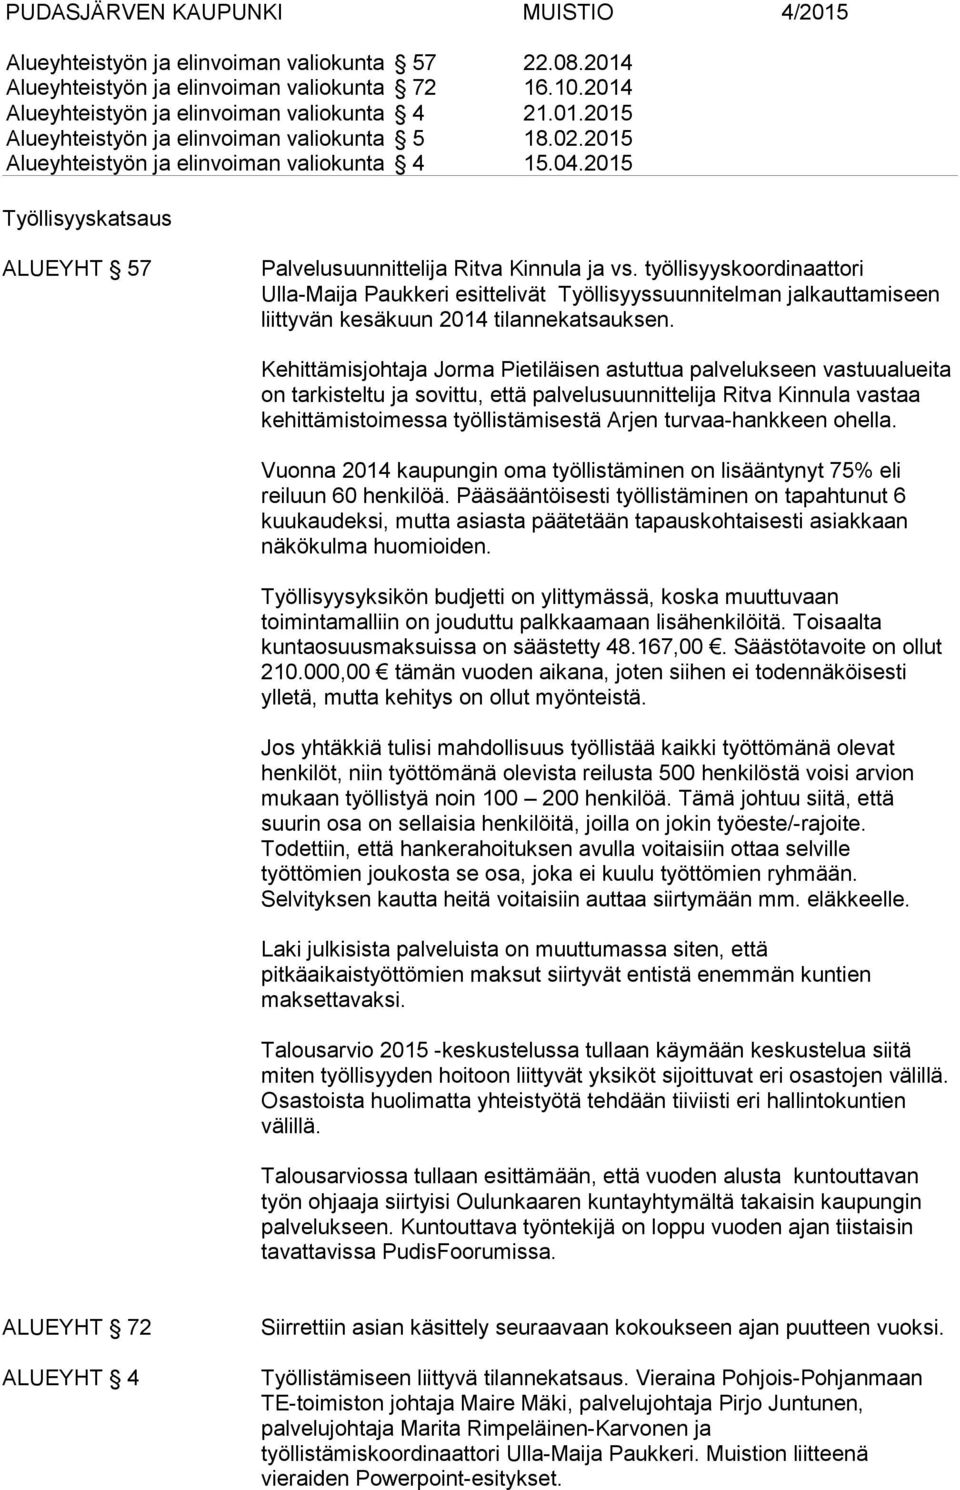 työllisyyskoordinaattori Ulla-Maija Paukkeri esittelivät Työllisyyssuunnitelman jalkauttamiseen liittyvän kesäkuun 2014 tilannekatsauksen.